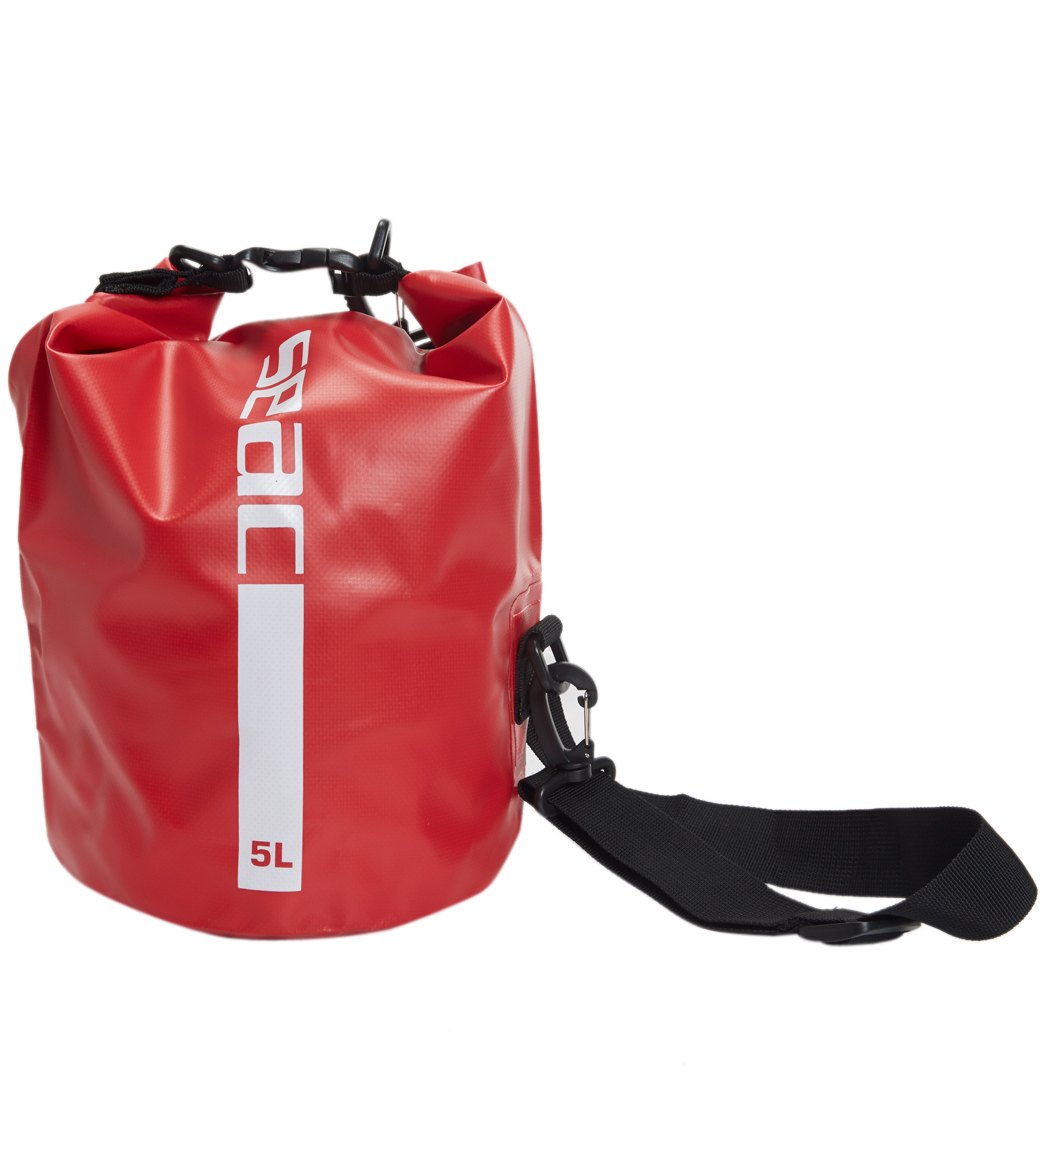 Seac Usa Dry Bag - Red 15 Lt - Swimoutlet.com